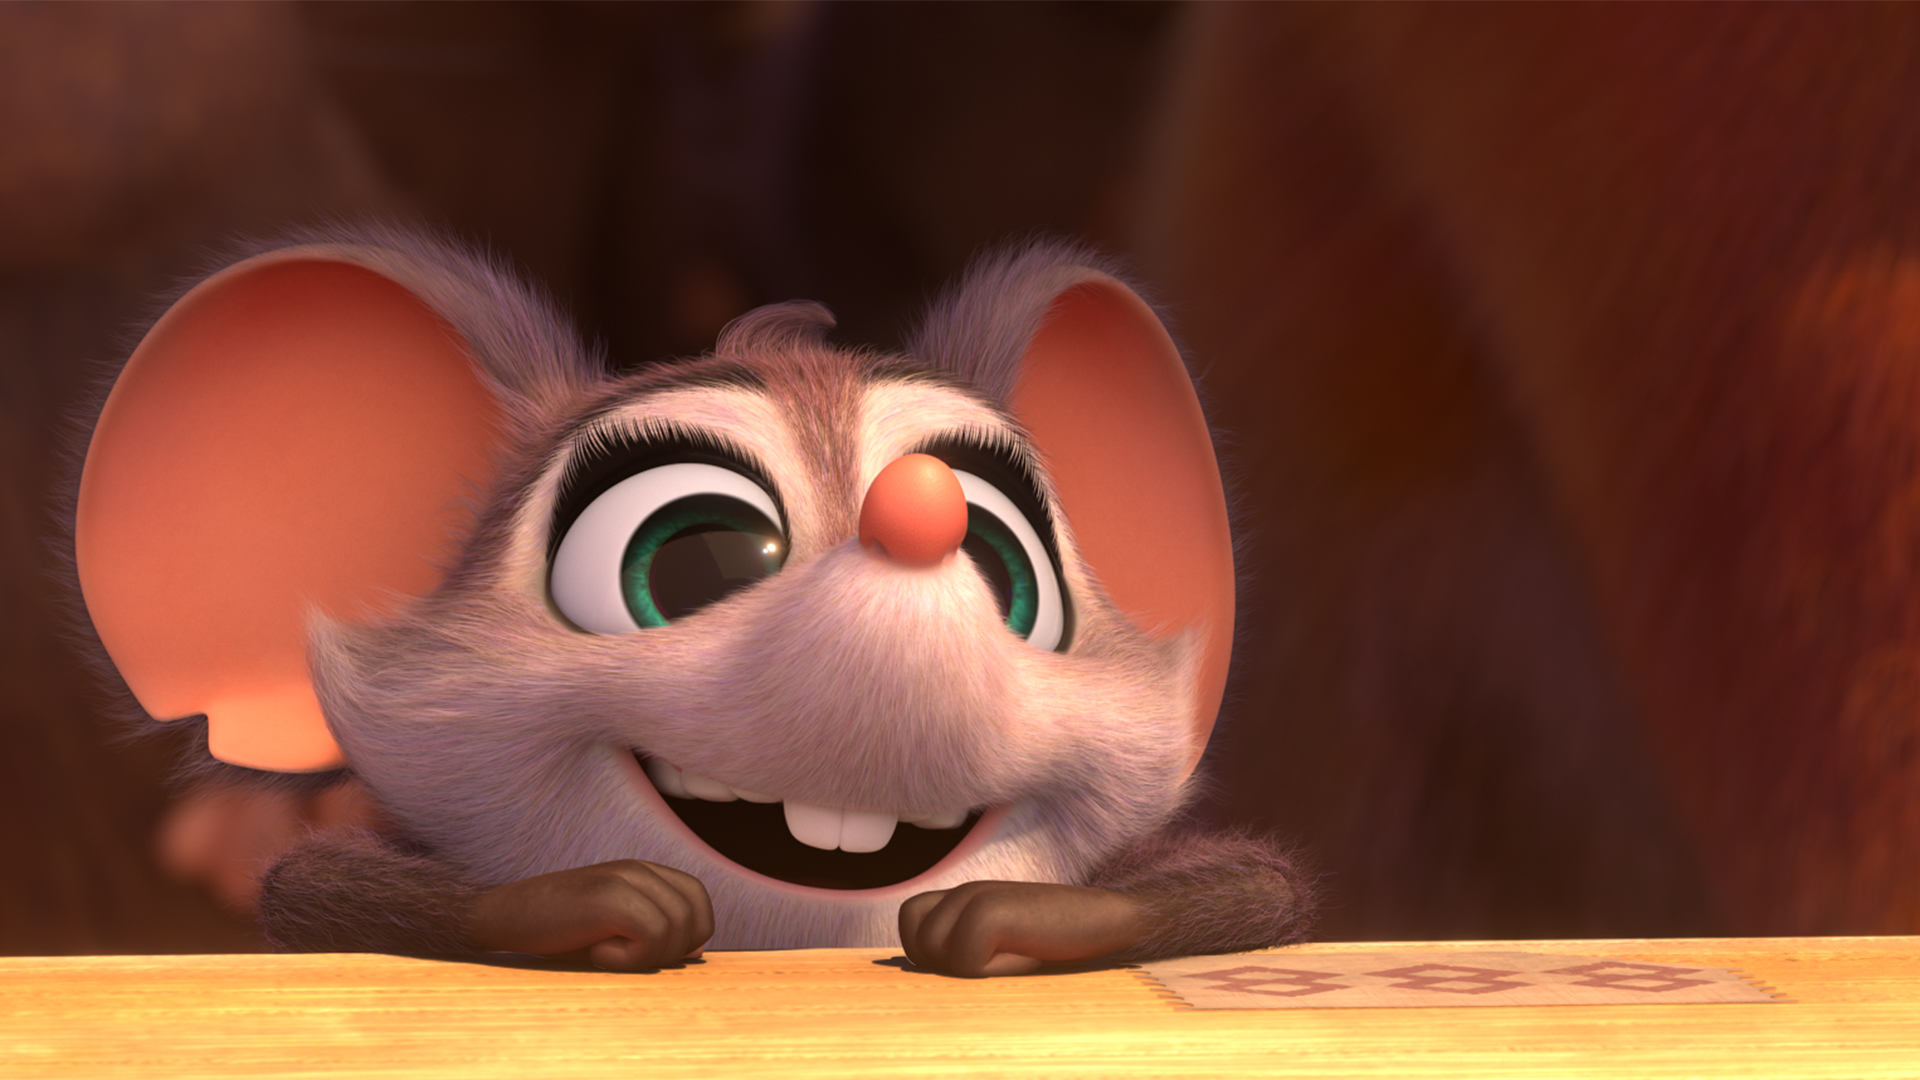 Kadr z filmu animowanego. Portret uśmiechniętej myszy,